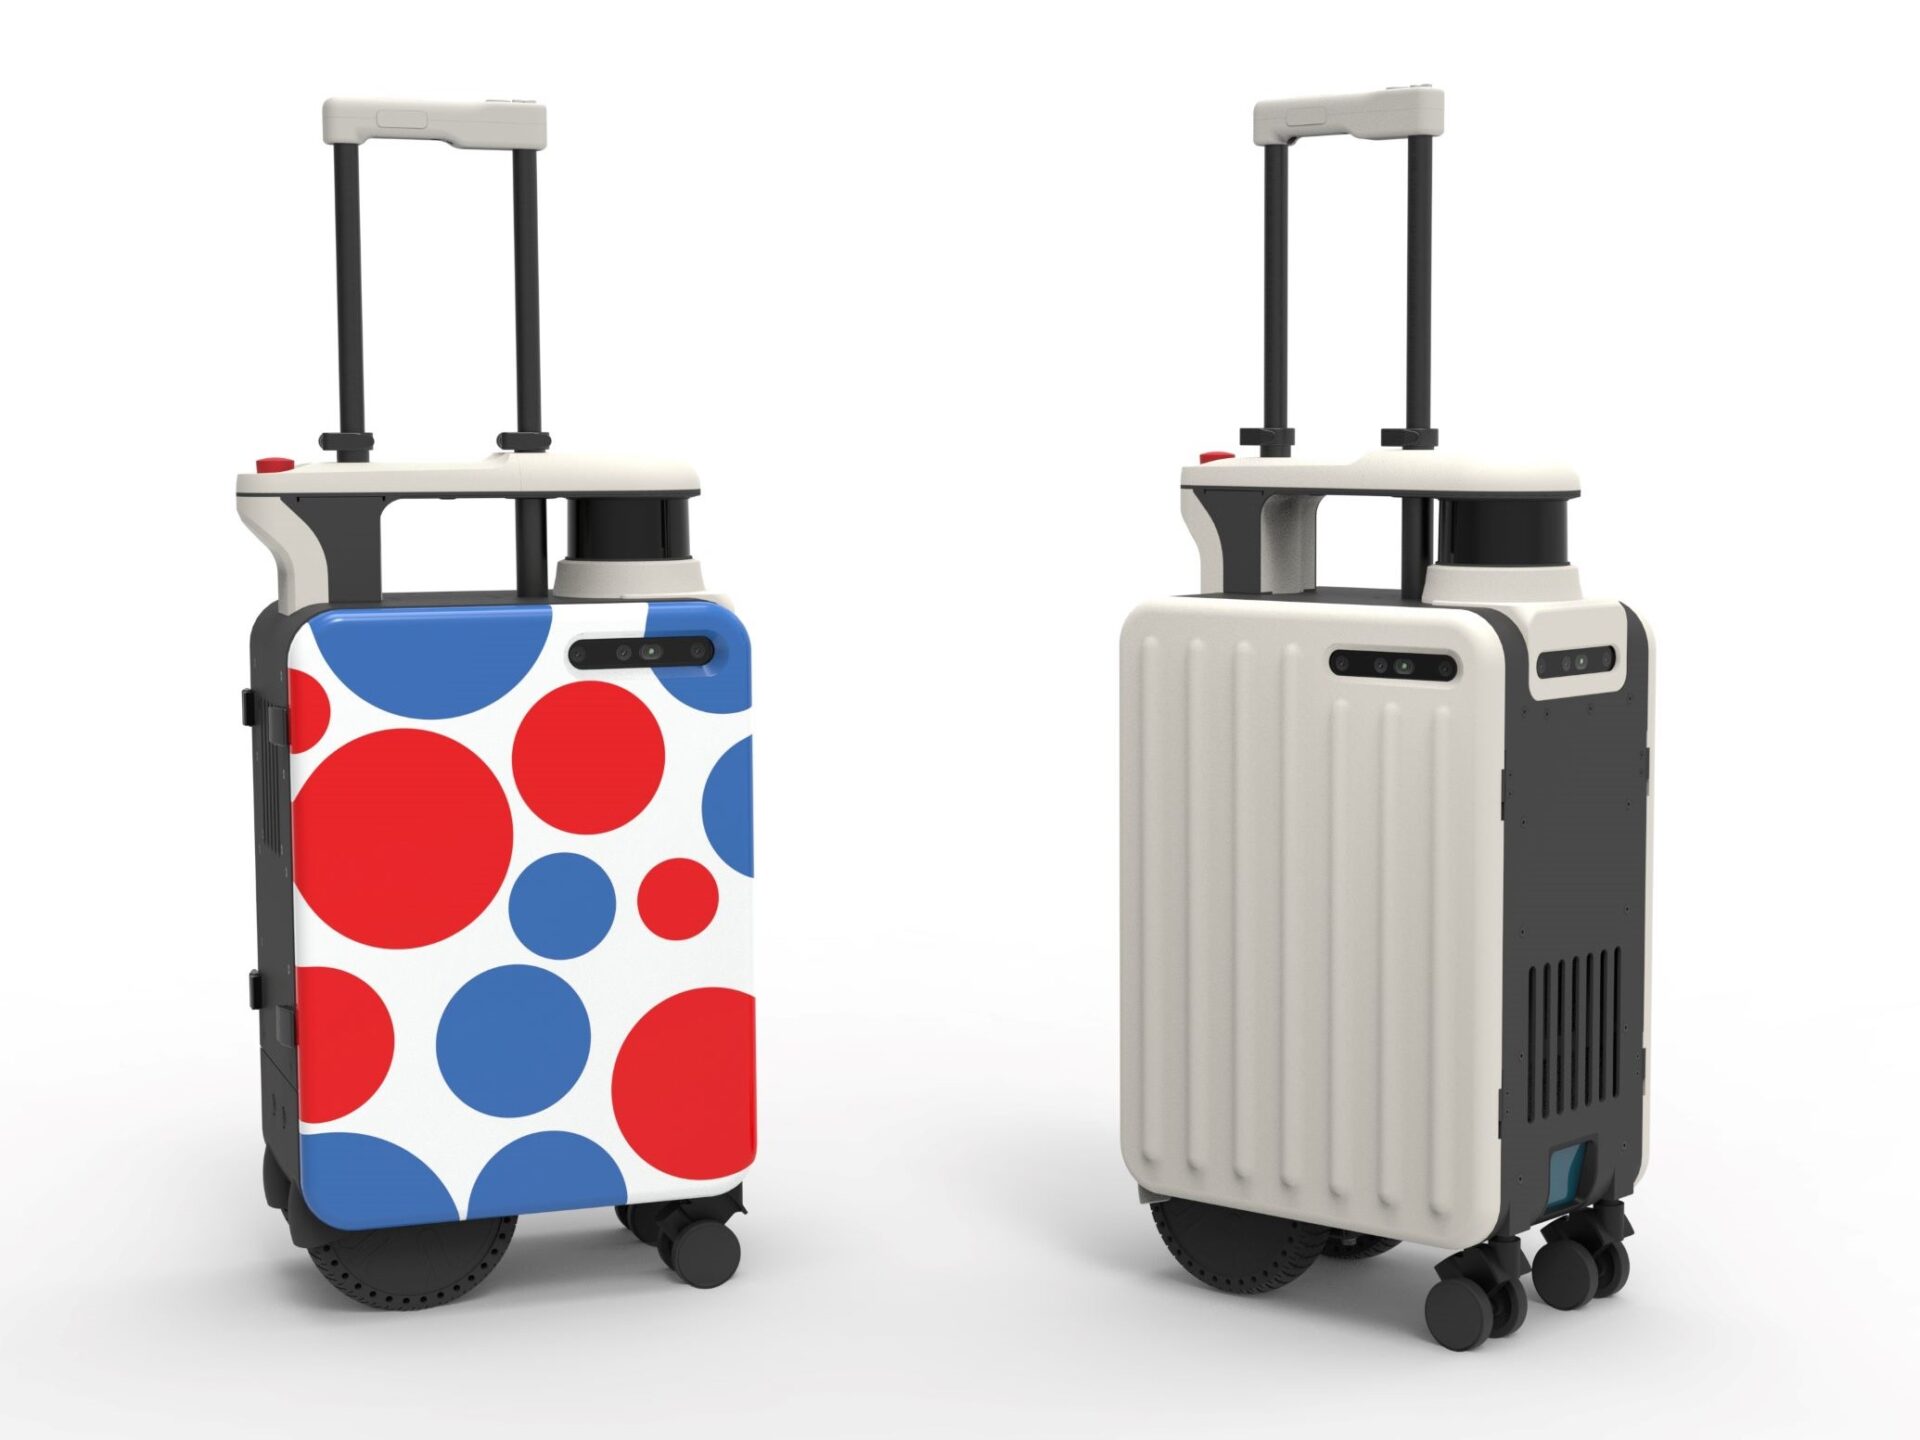 エーアイスーツケースの万博特別モデルのイメージ画像。みためはこれまでの屋内用のエーアイスーツケースとほぼかわりませんが、スーツケース本体にしろじに赤や青の大小さまざまな大きさの水玉模様があしらわれており、カジュアルなイメージのみためとなっています